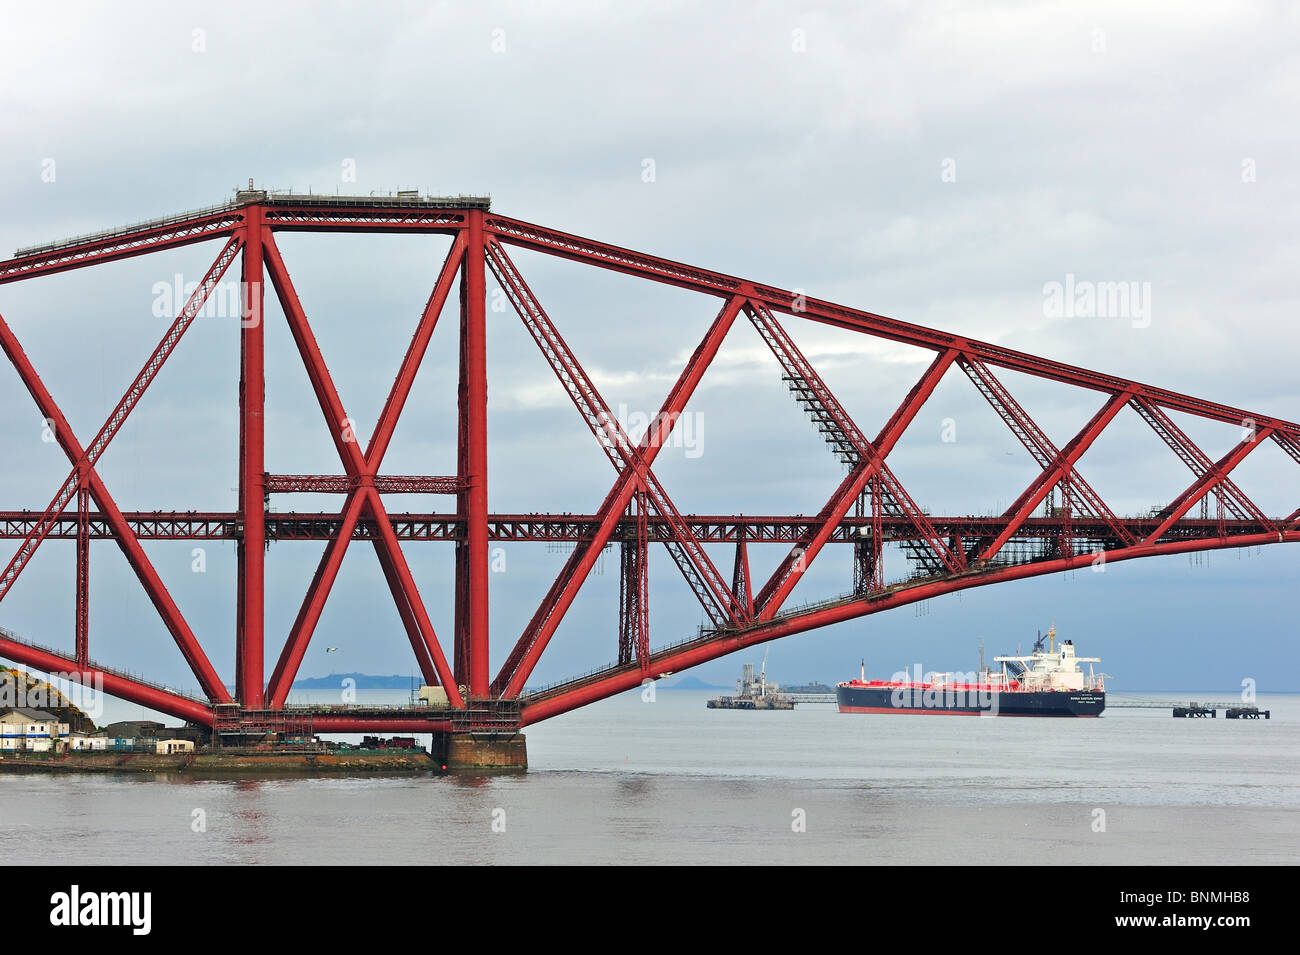 Petrolero navegando bajo el Forth Railway Bridge / puente ferroviario de Forth, un puente sobre el Firth of Forth, cerca de Edimburgo, Escocia Foto de stock